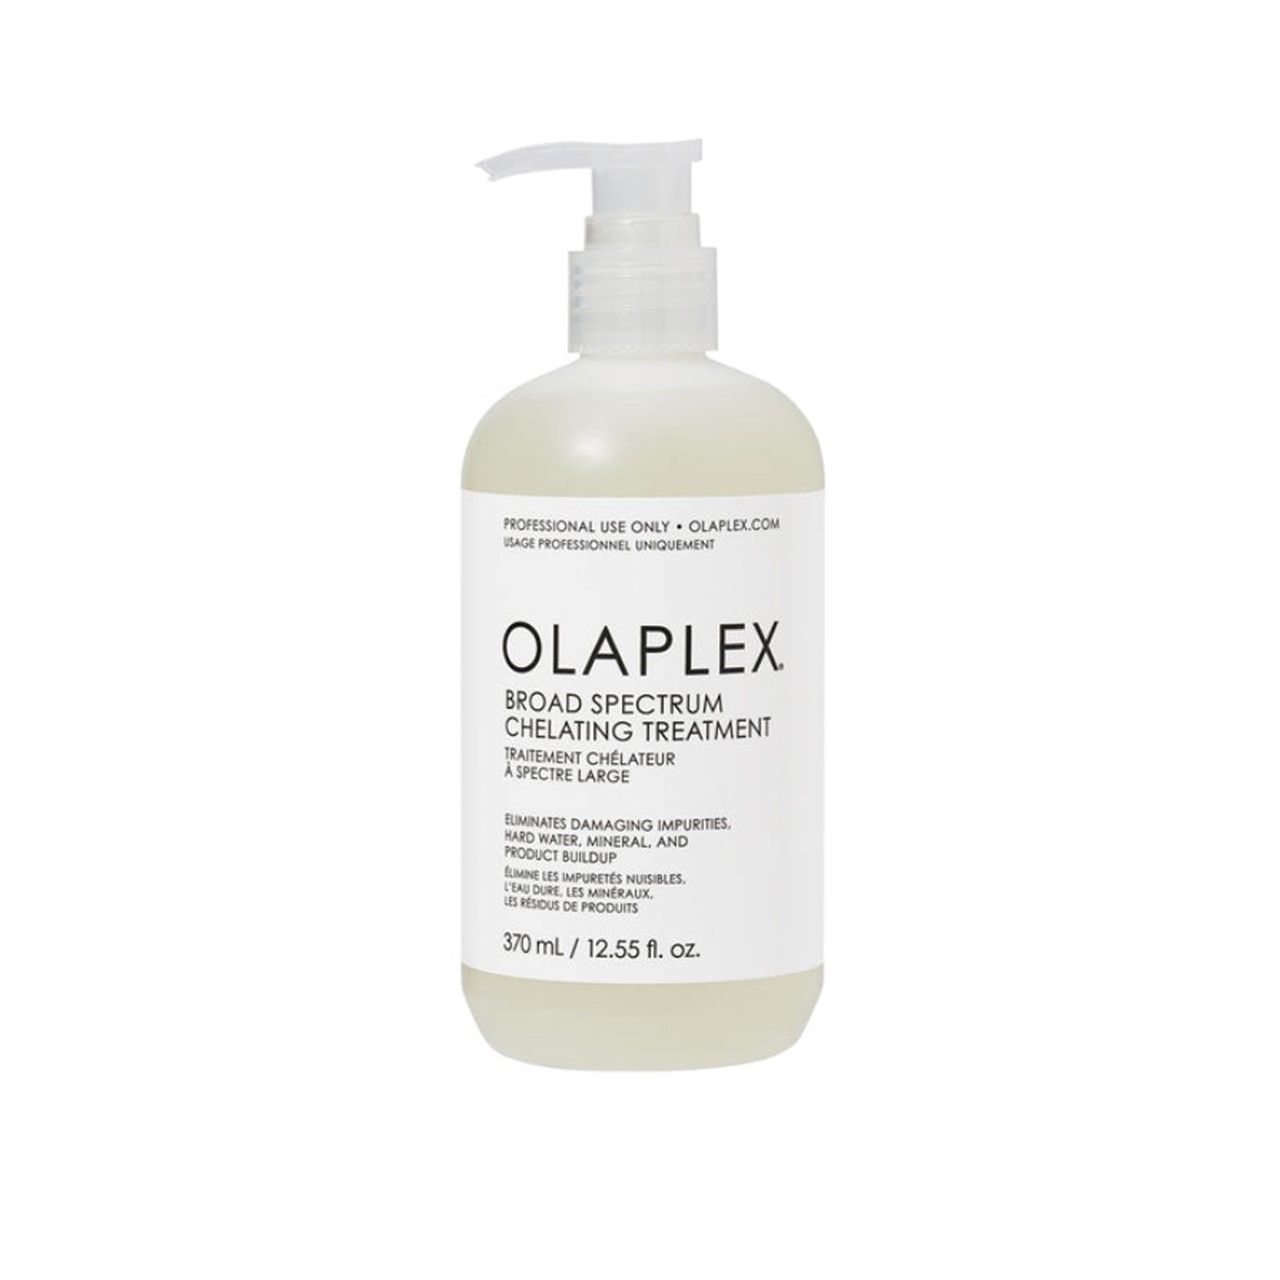 OLAPLEX Broad Spectrum Chelating Treatment 370ml (12.55 fl oz)